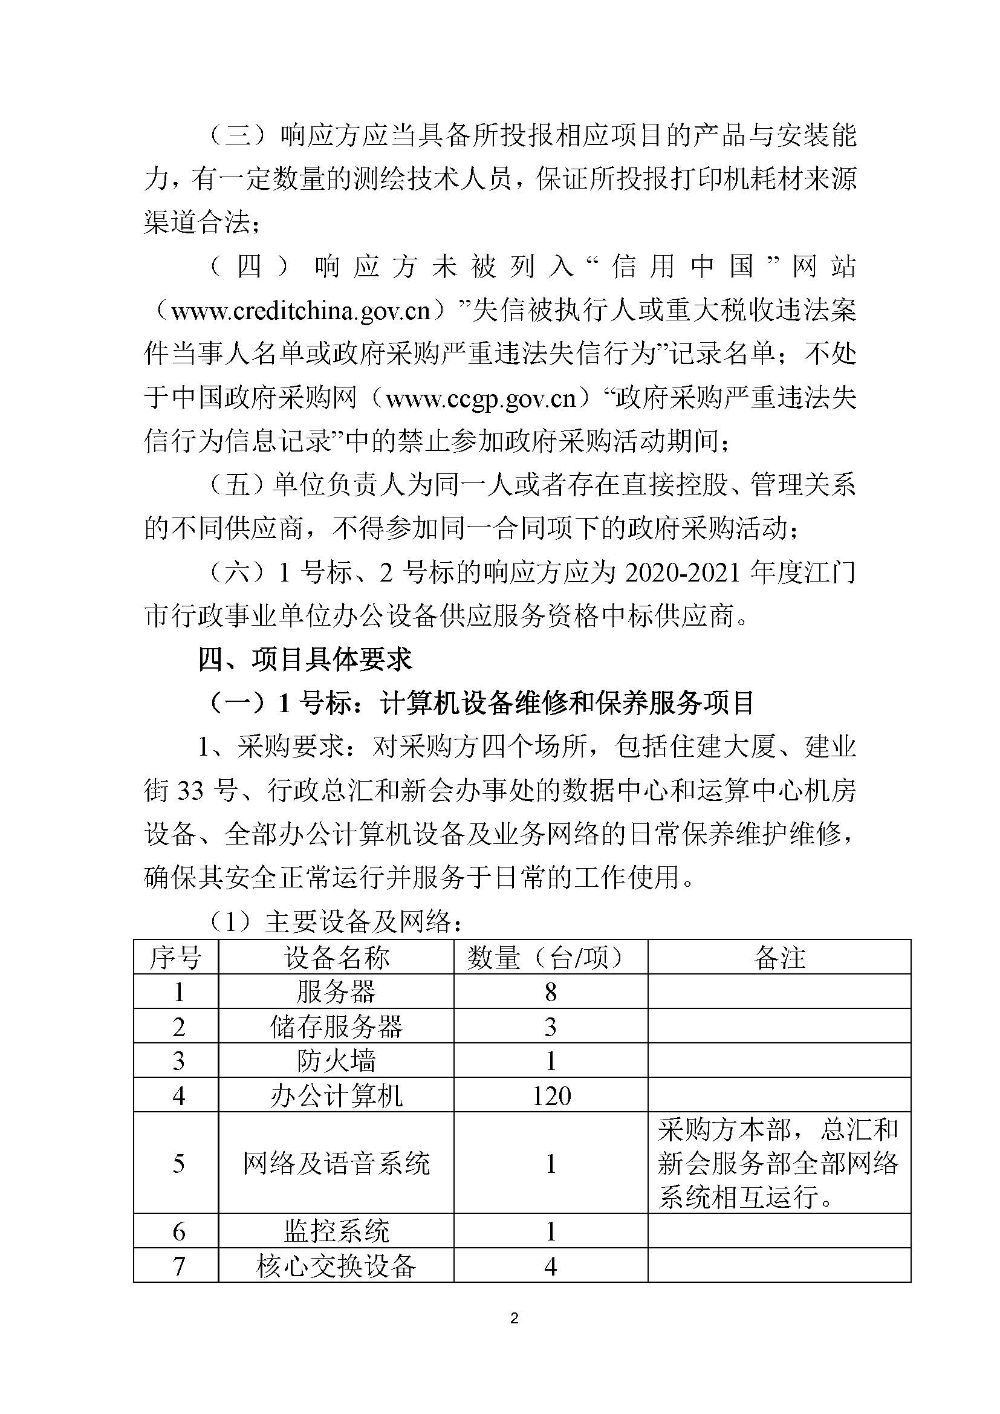 210420江门市国土测绘大队采购计算机设备维修和保养服务等项目采购公告 (2).jpg